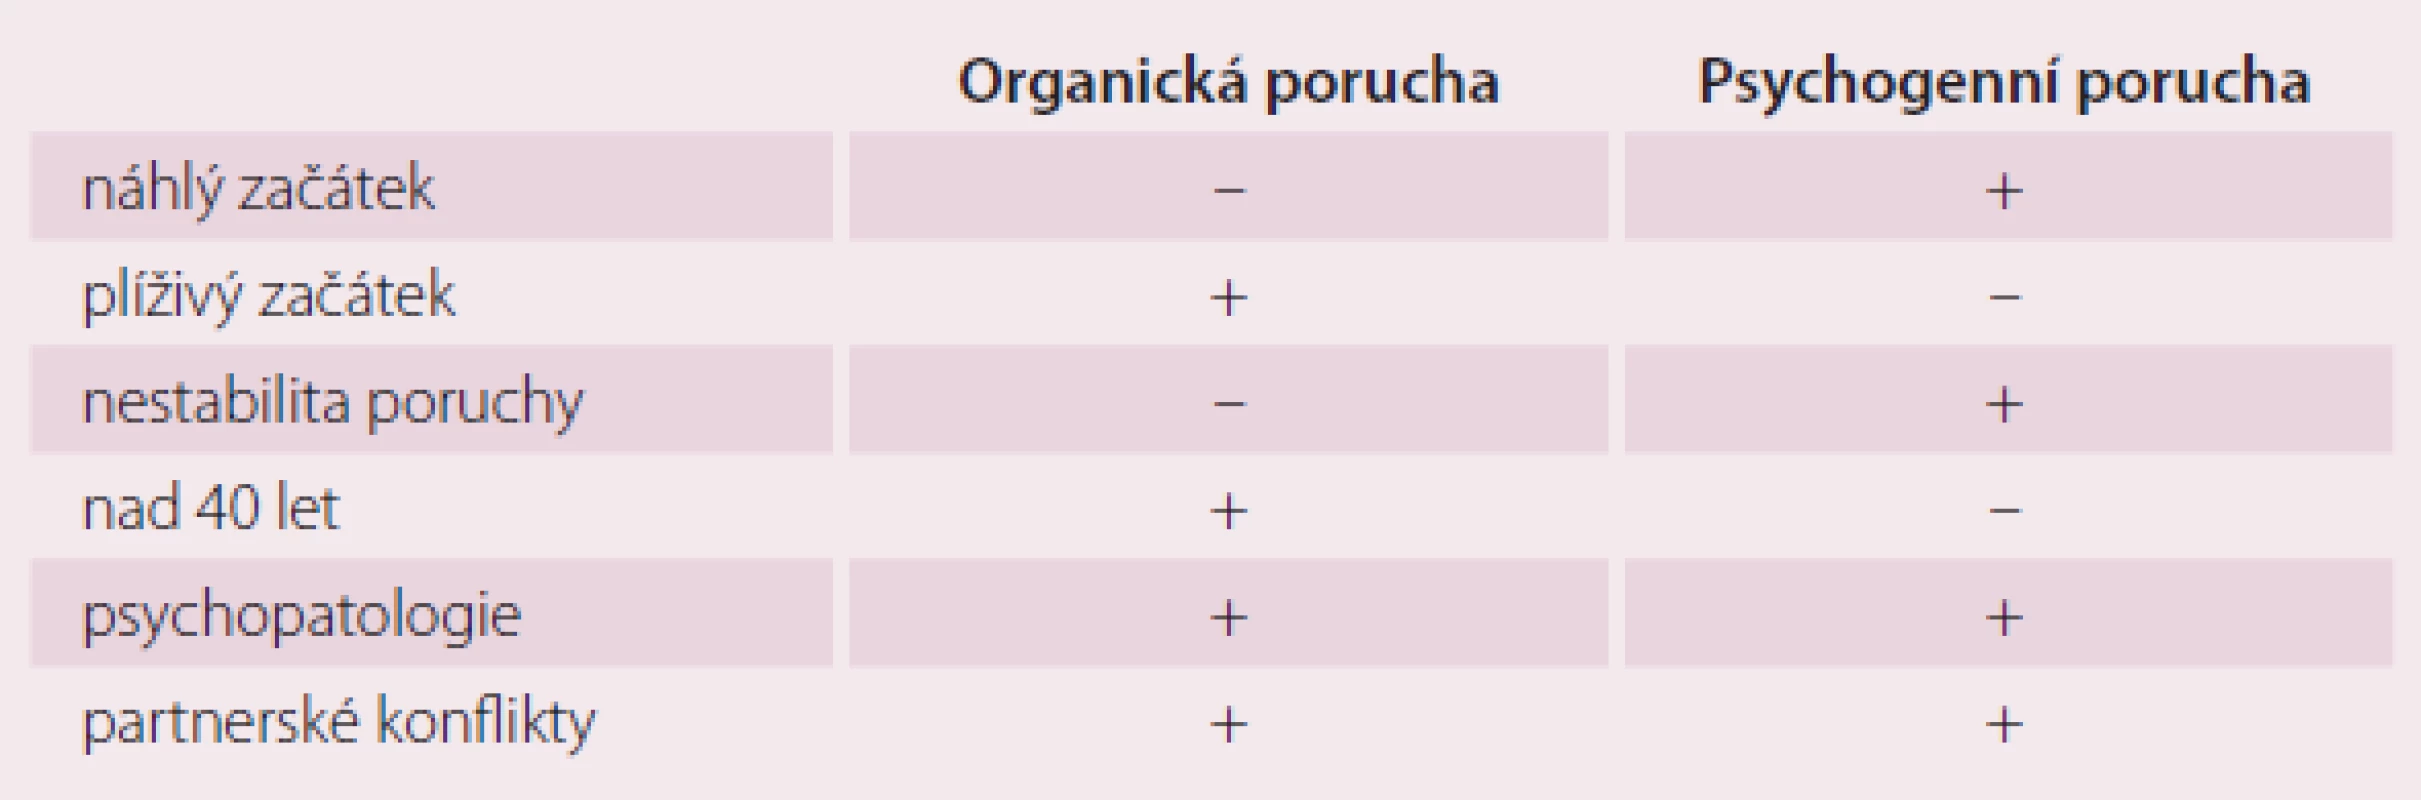 Možnosti rozlišení organické a psychogenní poruch erekce [3].